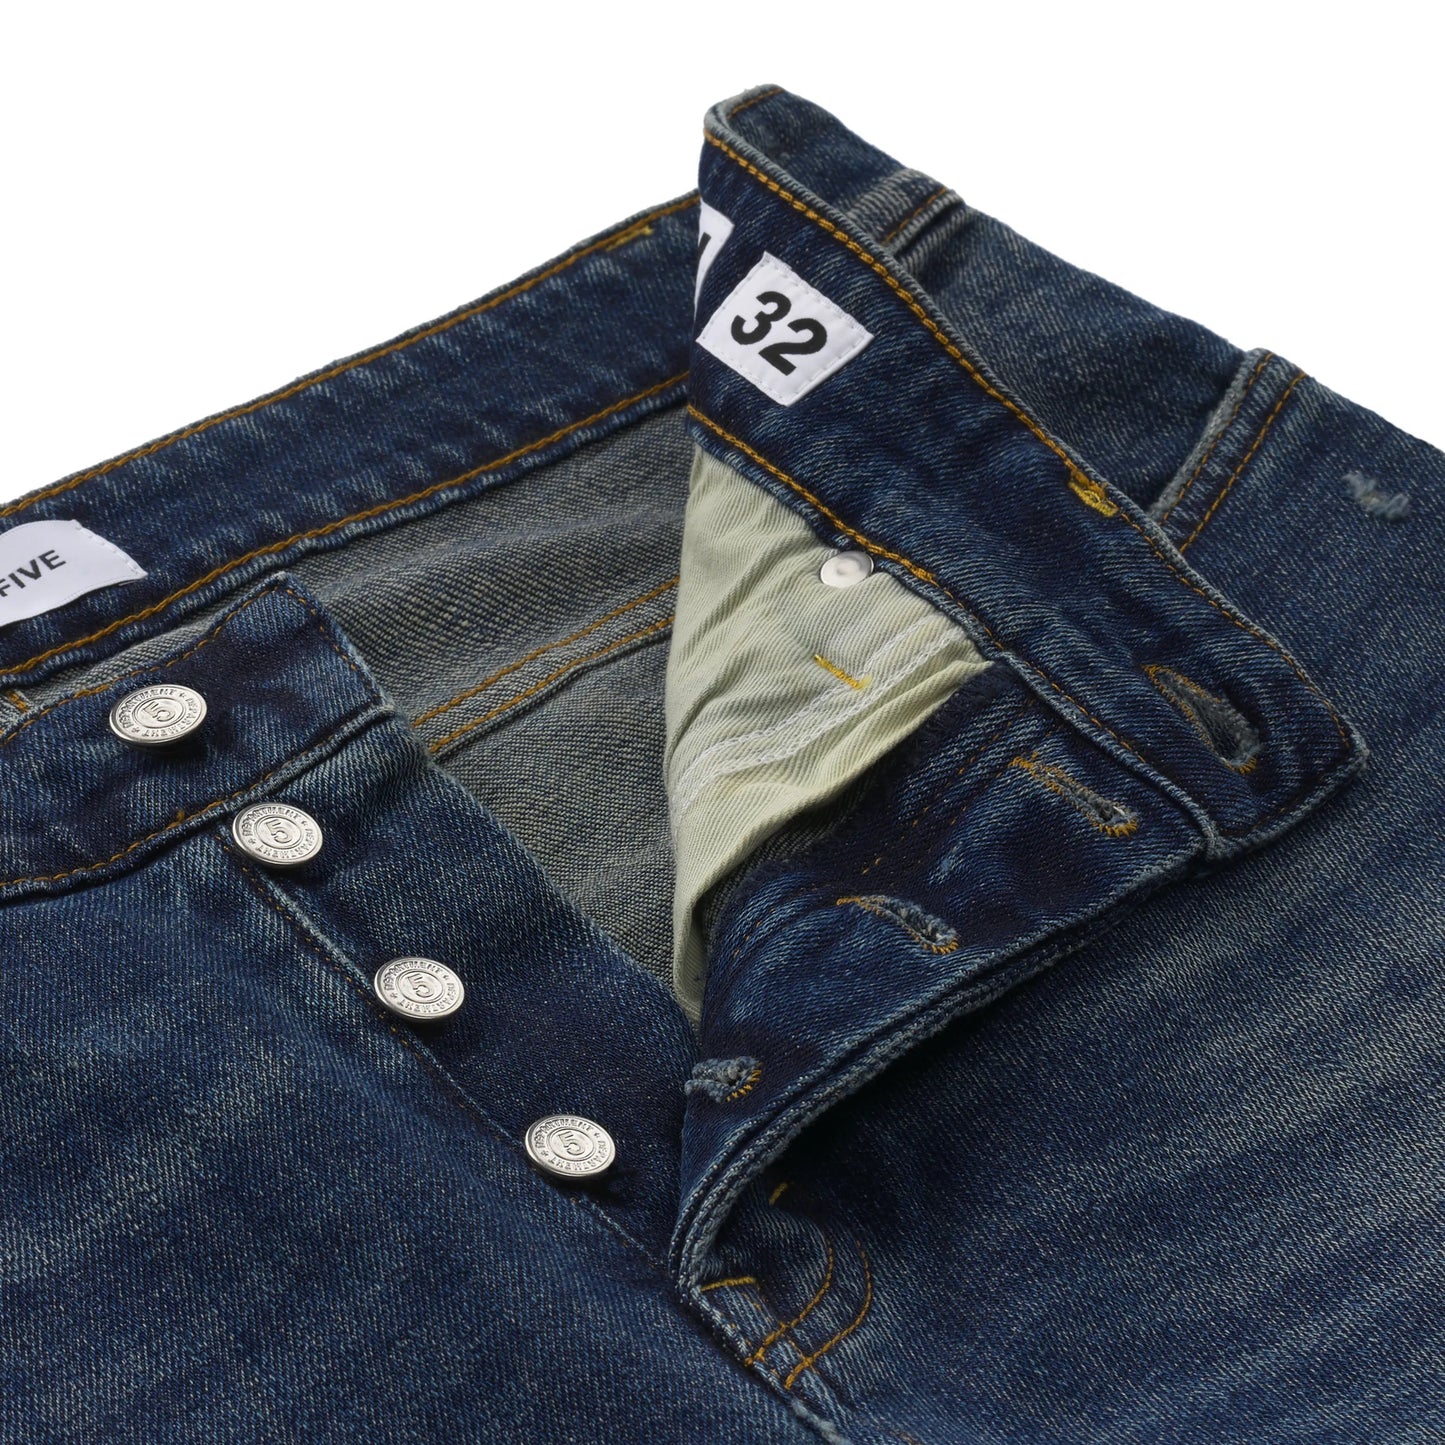 Department Five Slim - Fit Five - Pocket Jeans in Denim Blue - SARTALE